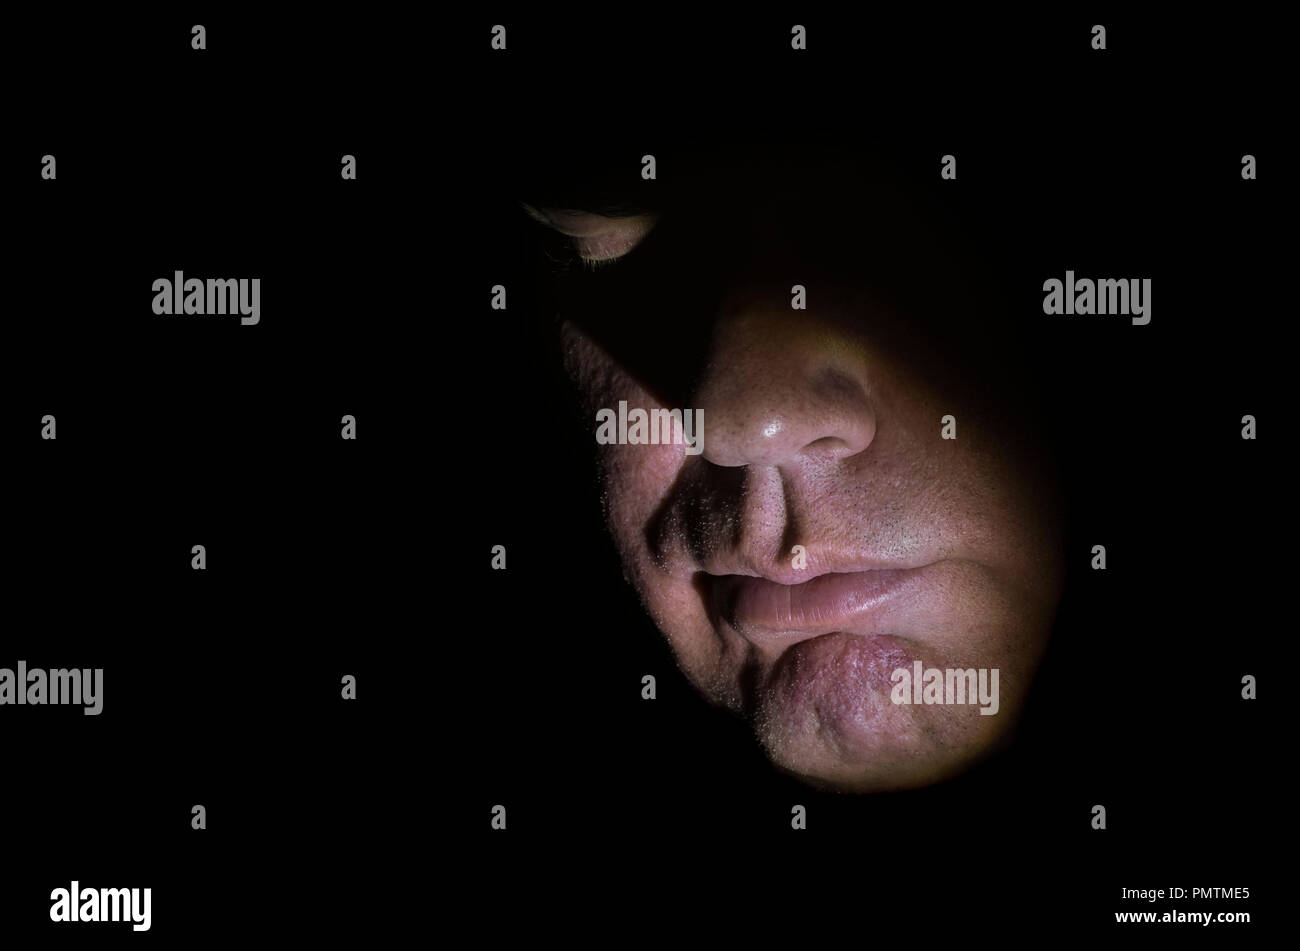 Modelo liberado closeup imagen de mediana edad del rostro del hombre caucásico, parcialmente iluminado con luces regulables y los ojos cerrados, mostrando la nariz y la boca, mirando hacia abajo. Foto de stock